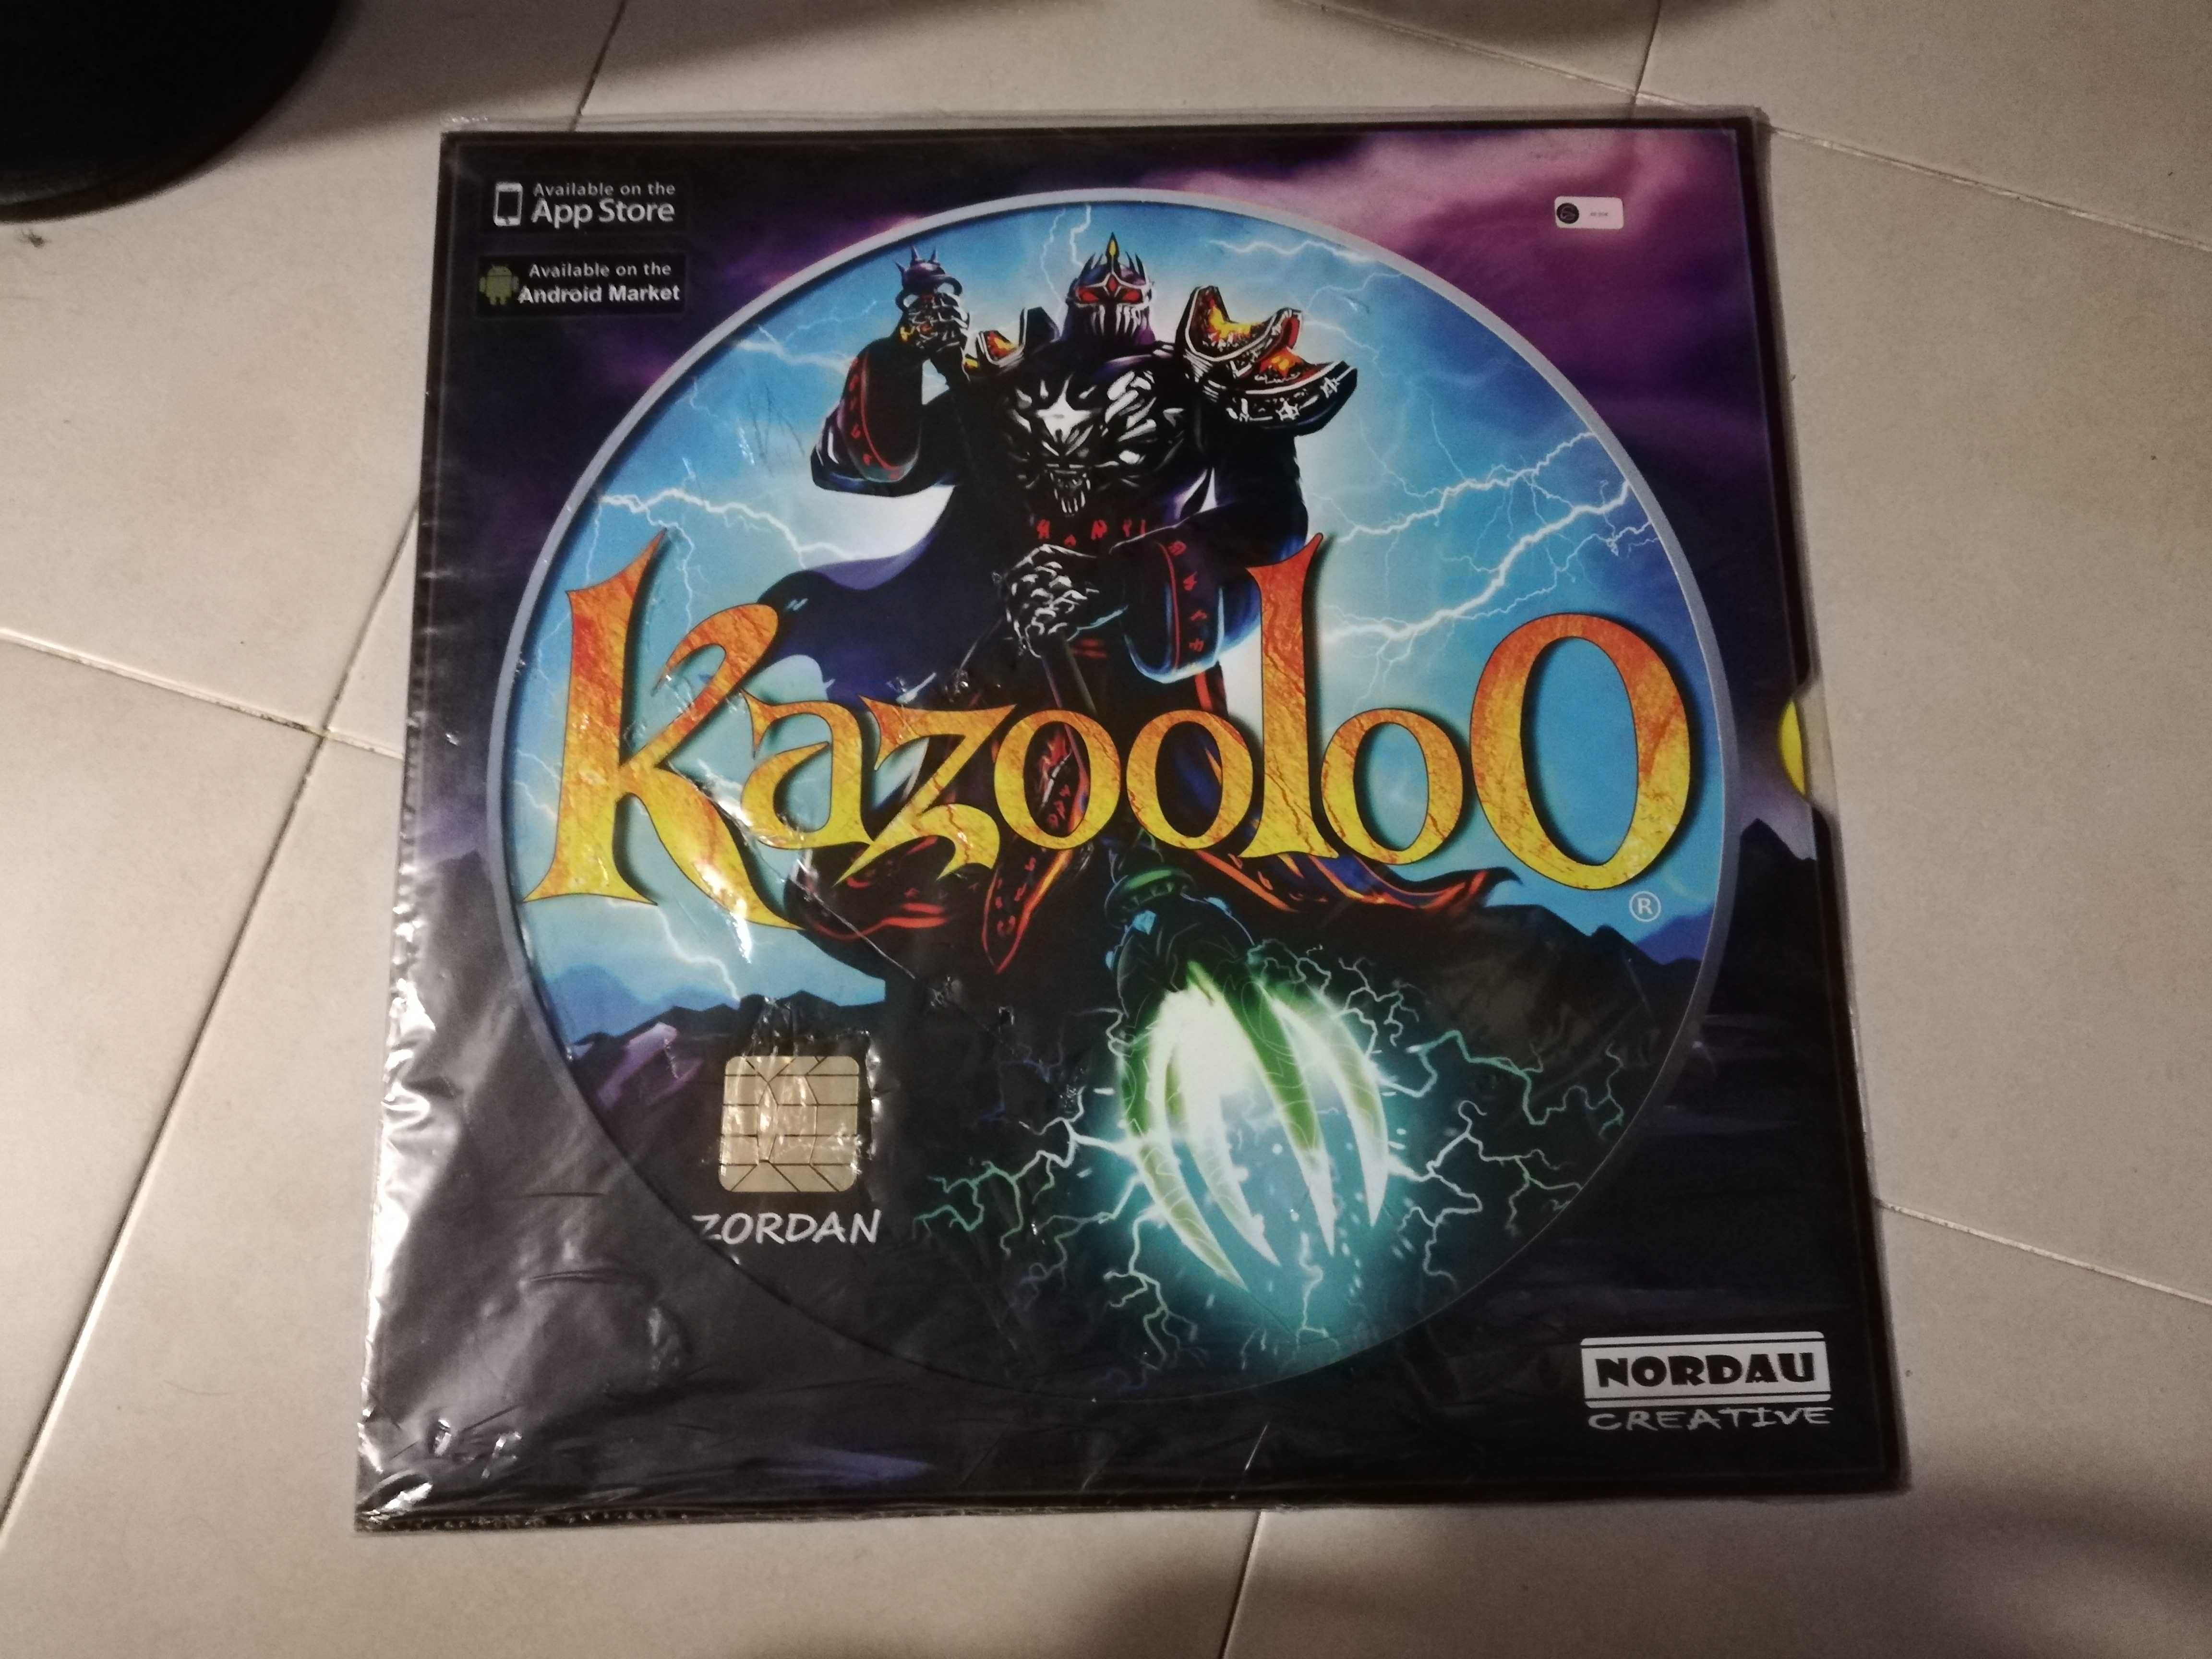 Kazooloo Jogo Realidade Aumentada - Vários preços, leia o anuncio todo